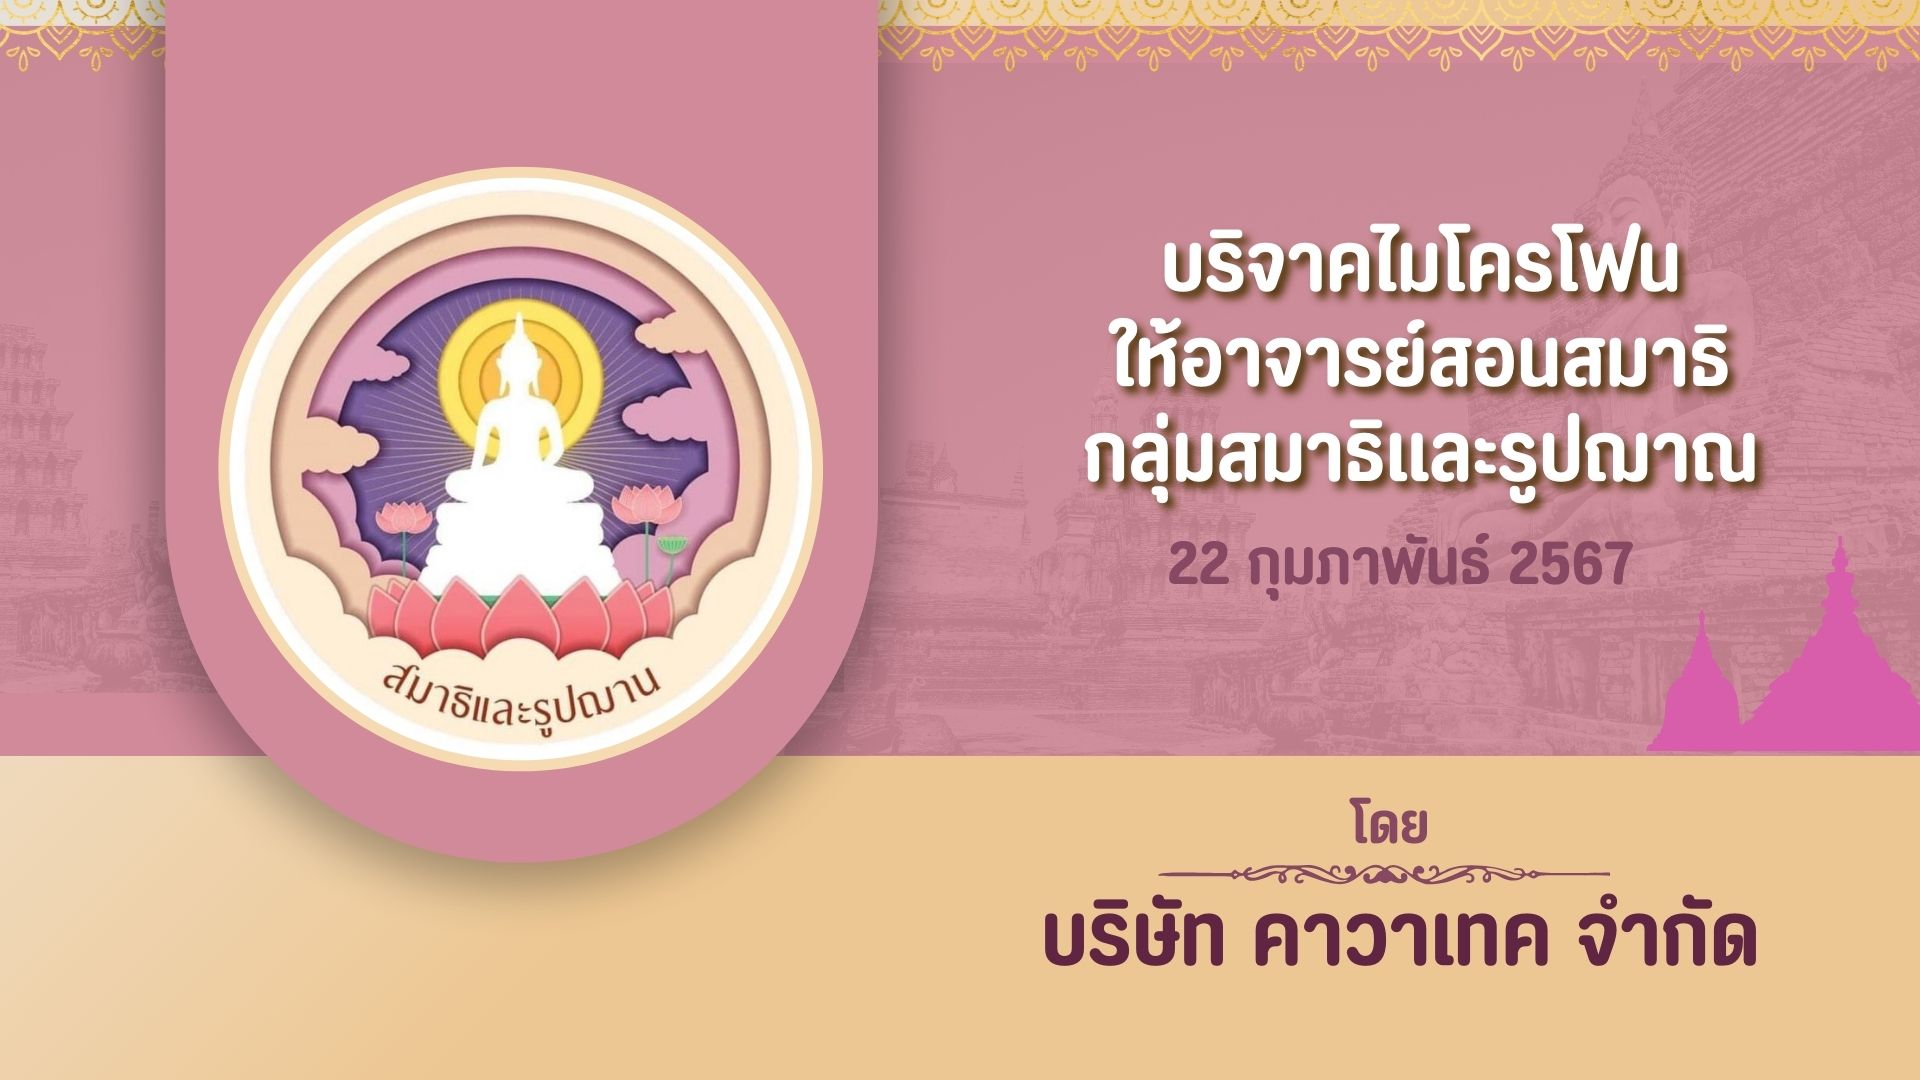 Images/Blog/VcWwgUAr-สีน้ำตาล สีครีม เป็นทางการ สถานที่ท่องเที่ยวทางประวัติศาสตร์ไทย พรีเซนเทชั่น (1).jpg